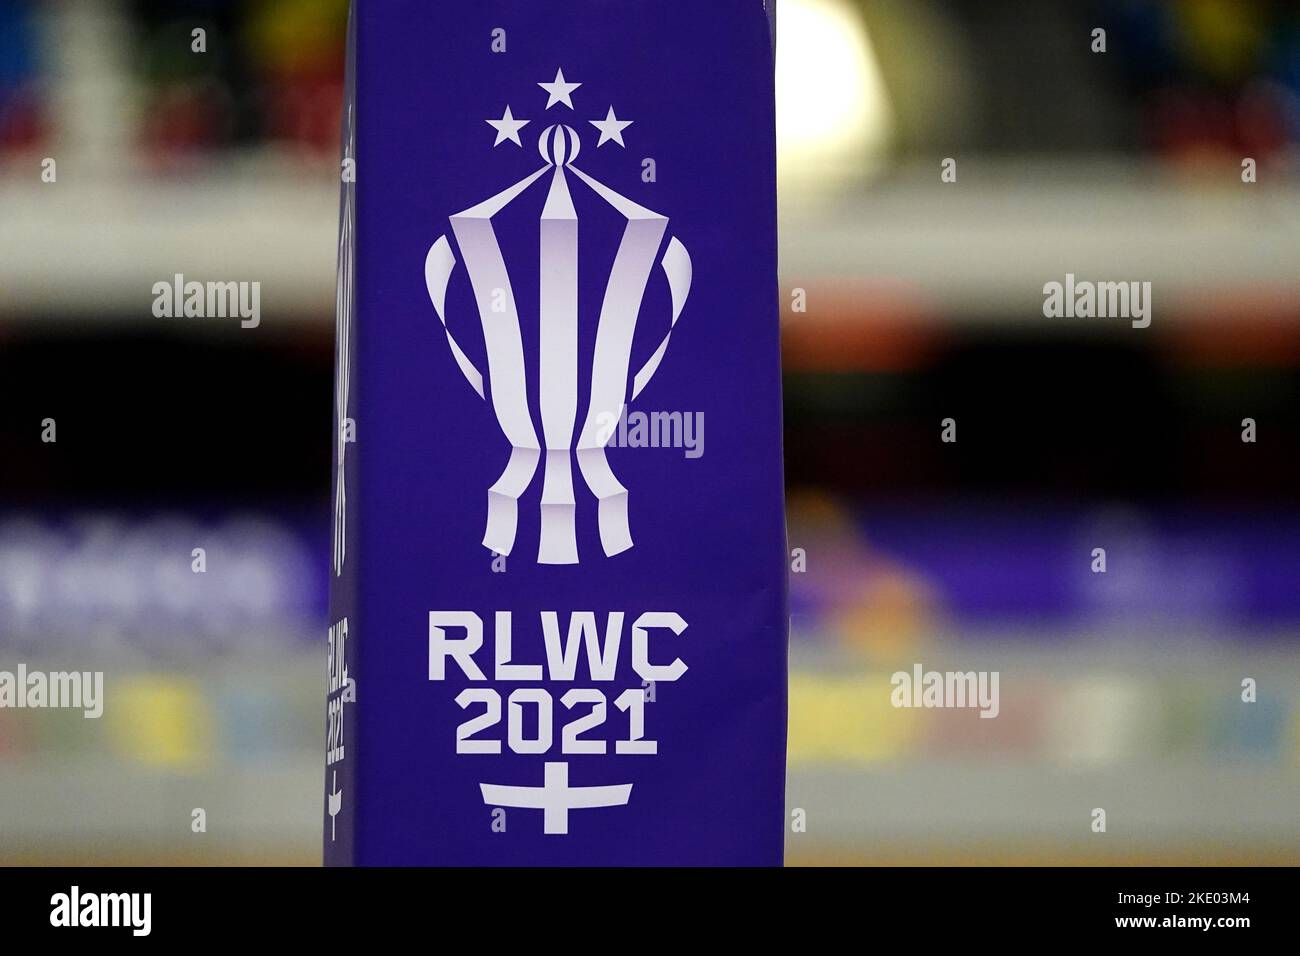 Eine allgemeine Sicht auf das Branding während des Wheelchair Rugby League World Cup-Spiels der Gruppe A in der Copper Box Arena, London. Bilddatum: Mittwoch, 9. November 2022. Stockfoto